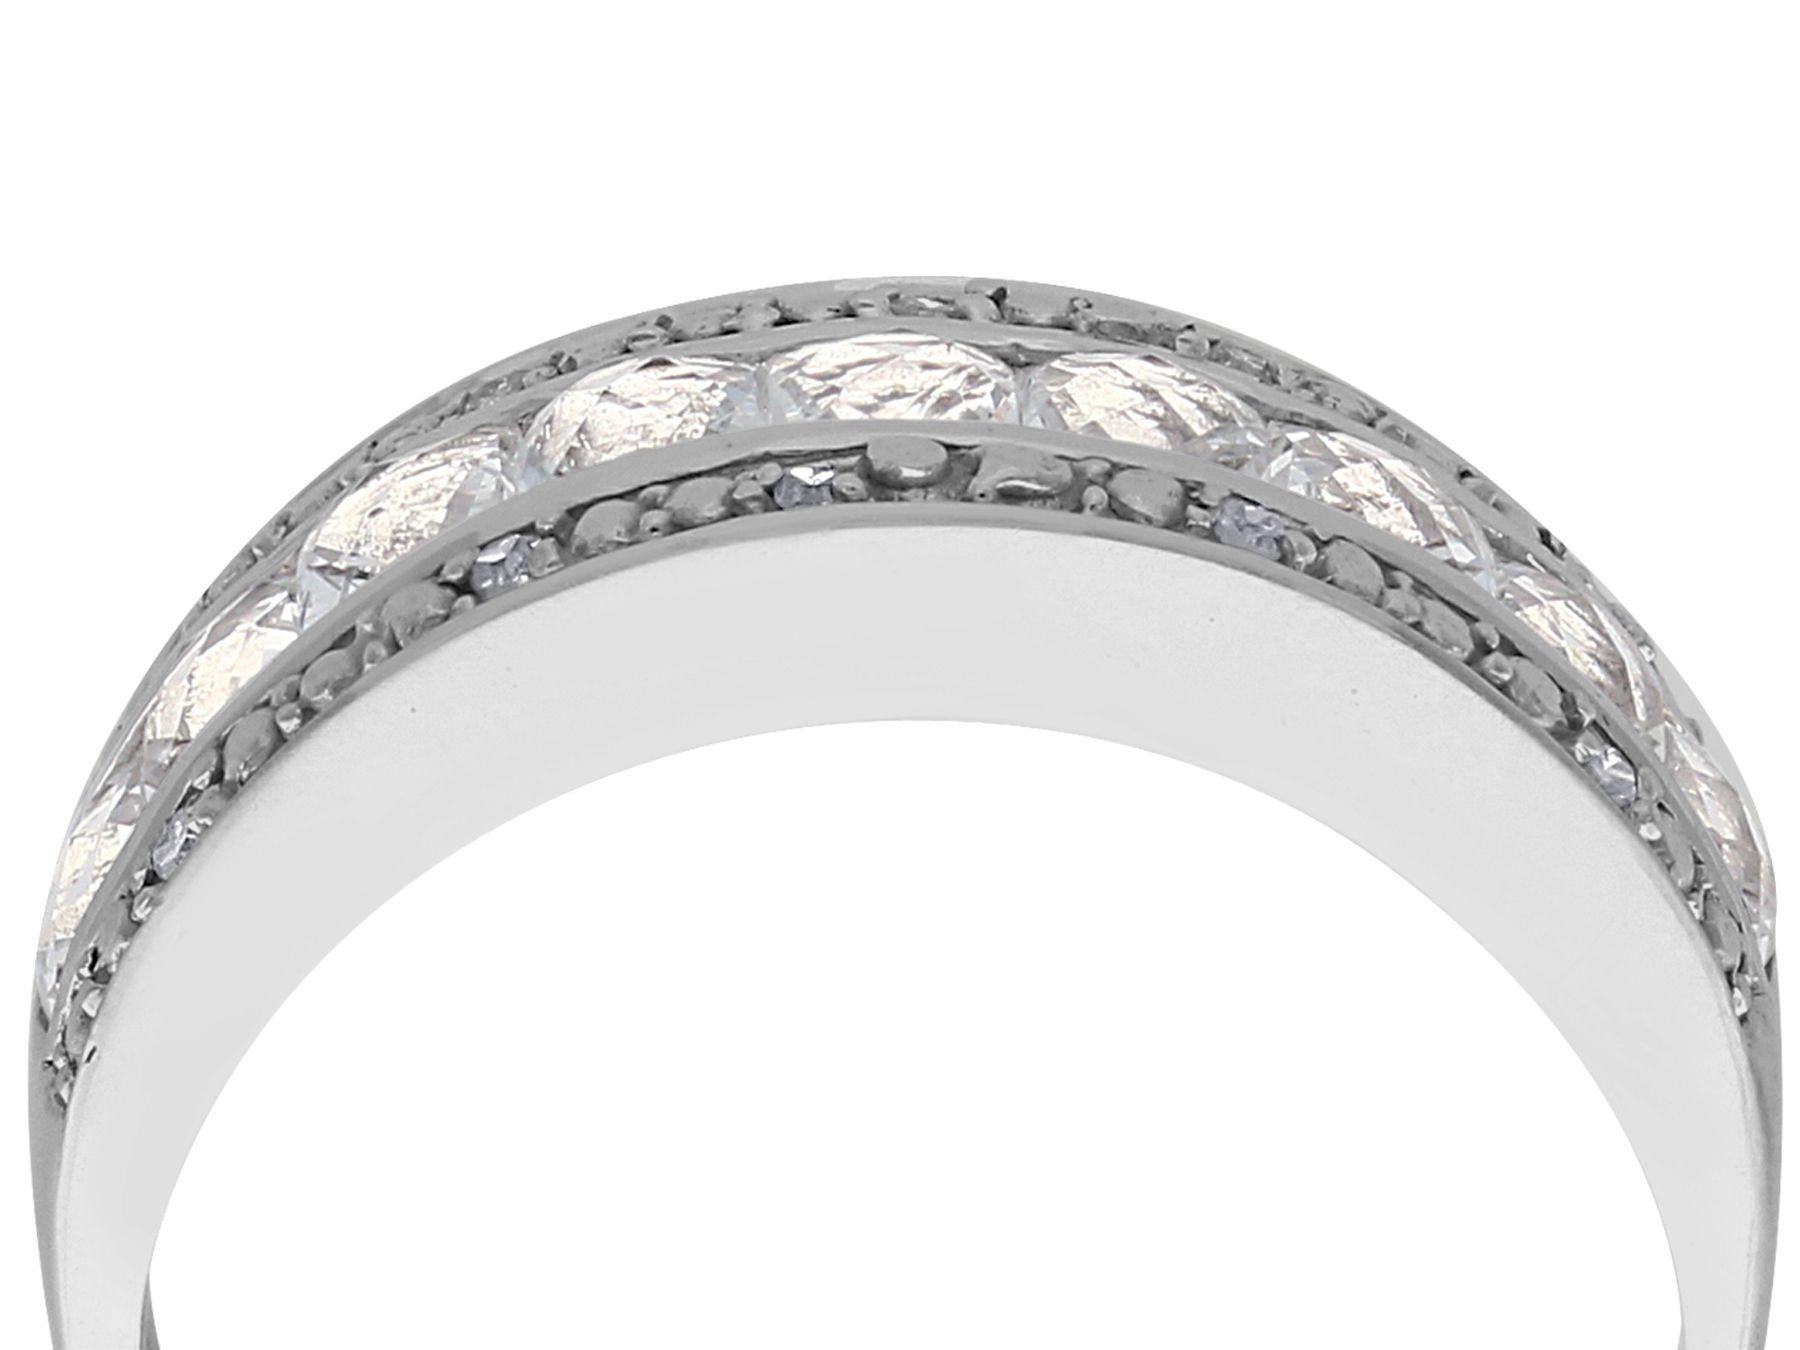 Ein beeindruckender Ring aus 9-karätigem Weißgold mit einem weißen Topas von 1,62 Karat und einem Diamanten von 0,10 Karat, der Teil unserer zeitgenössischen Schmuckkollektion ist.

Dieser moderne Ring mit weißem Topas und Diamanten ist aus 9 Karat